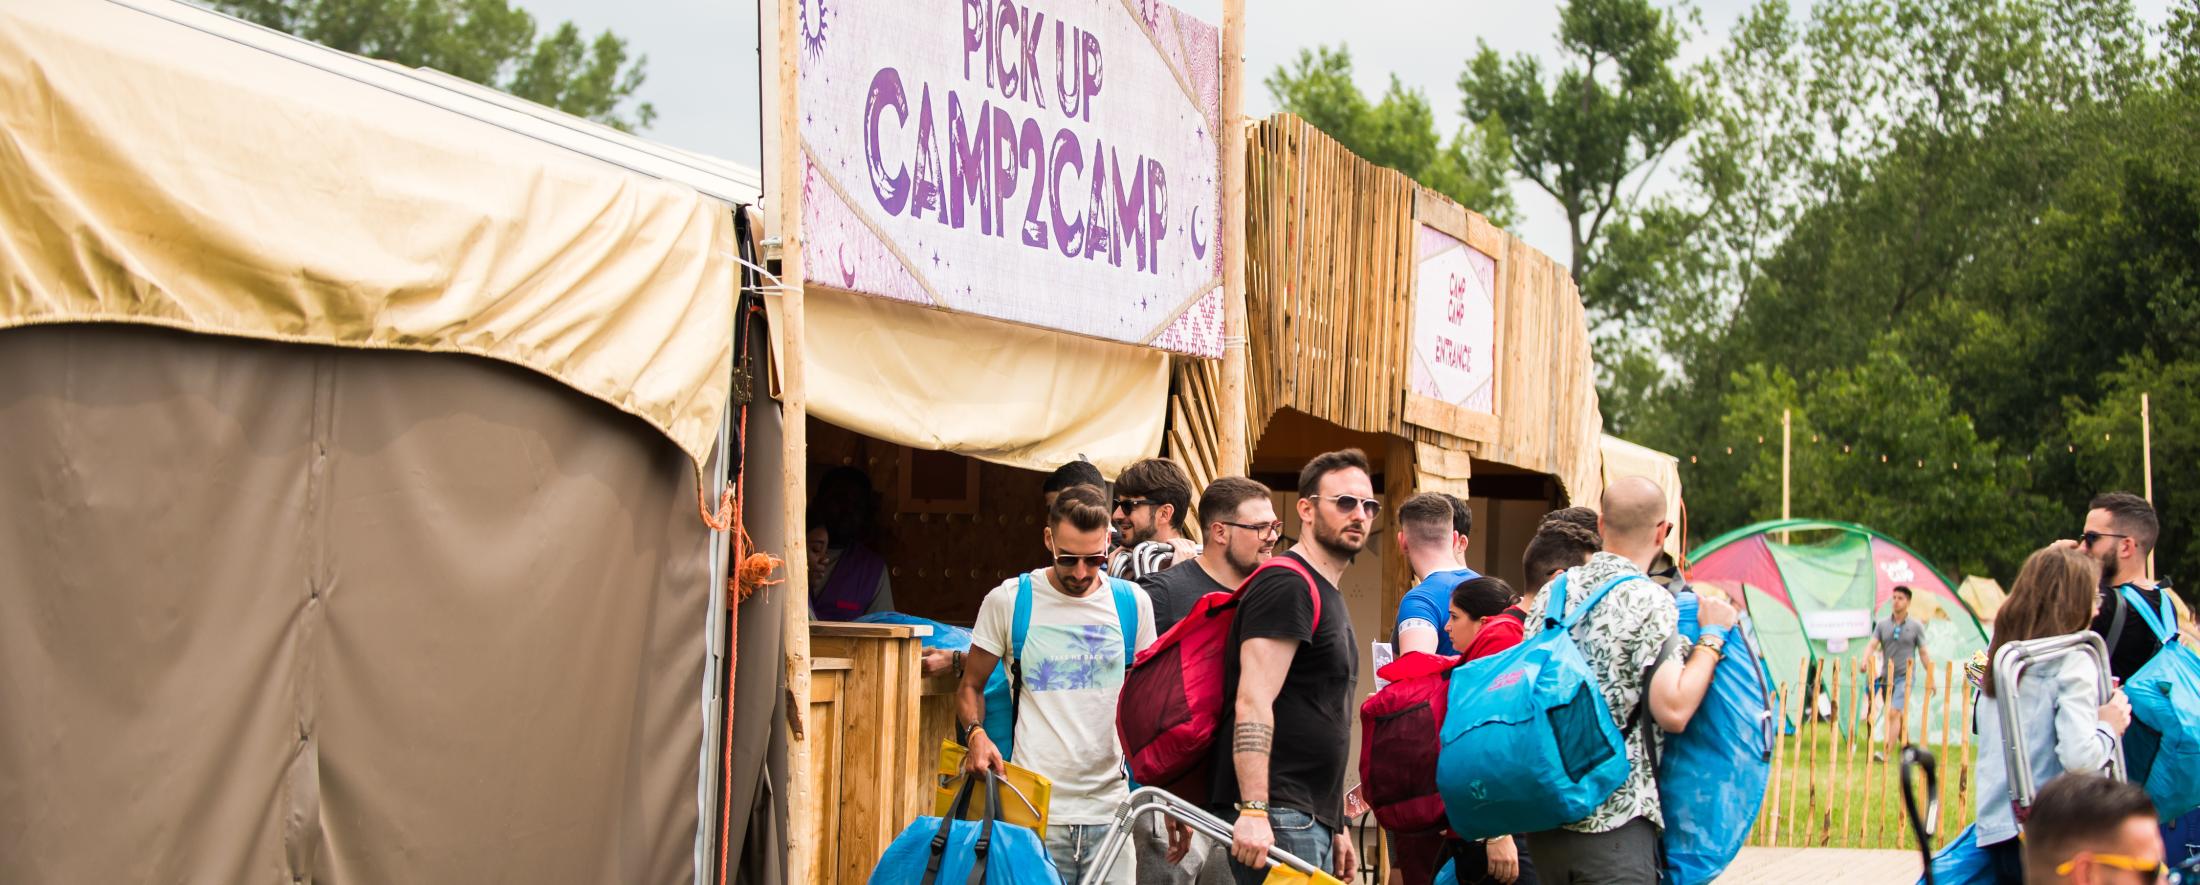 camp2camp